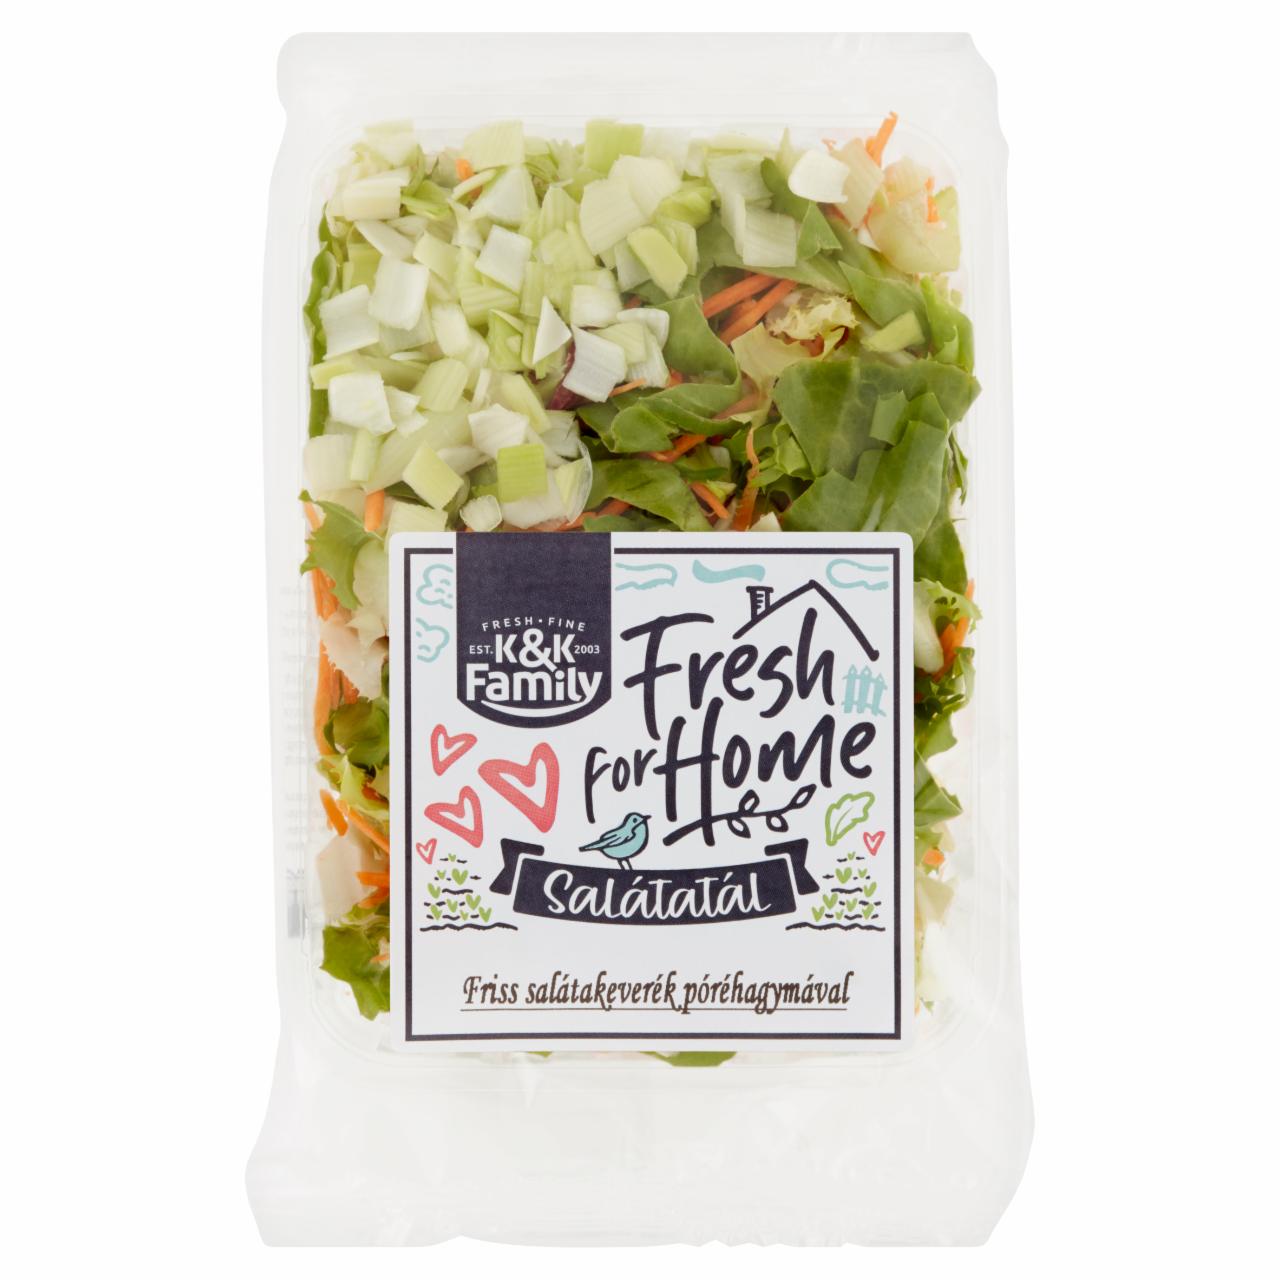 Képek - K&K Family Fresh for Home Salátatál friss salátakeverék póréhagymával 115 g